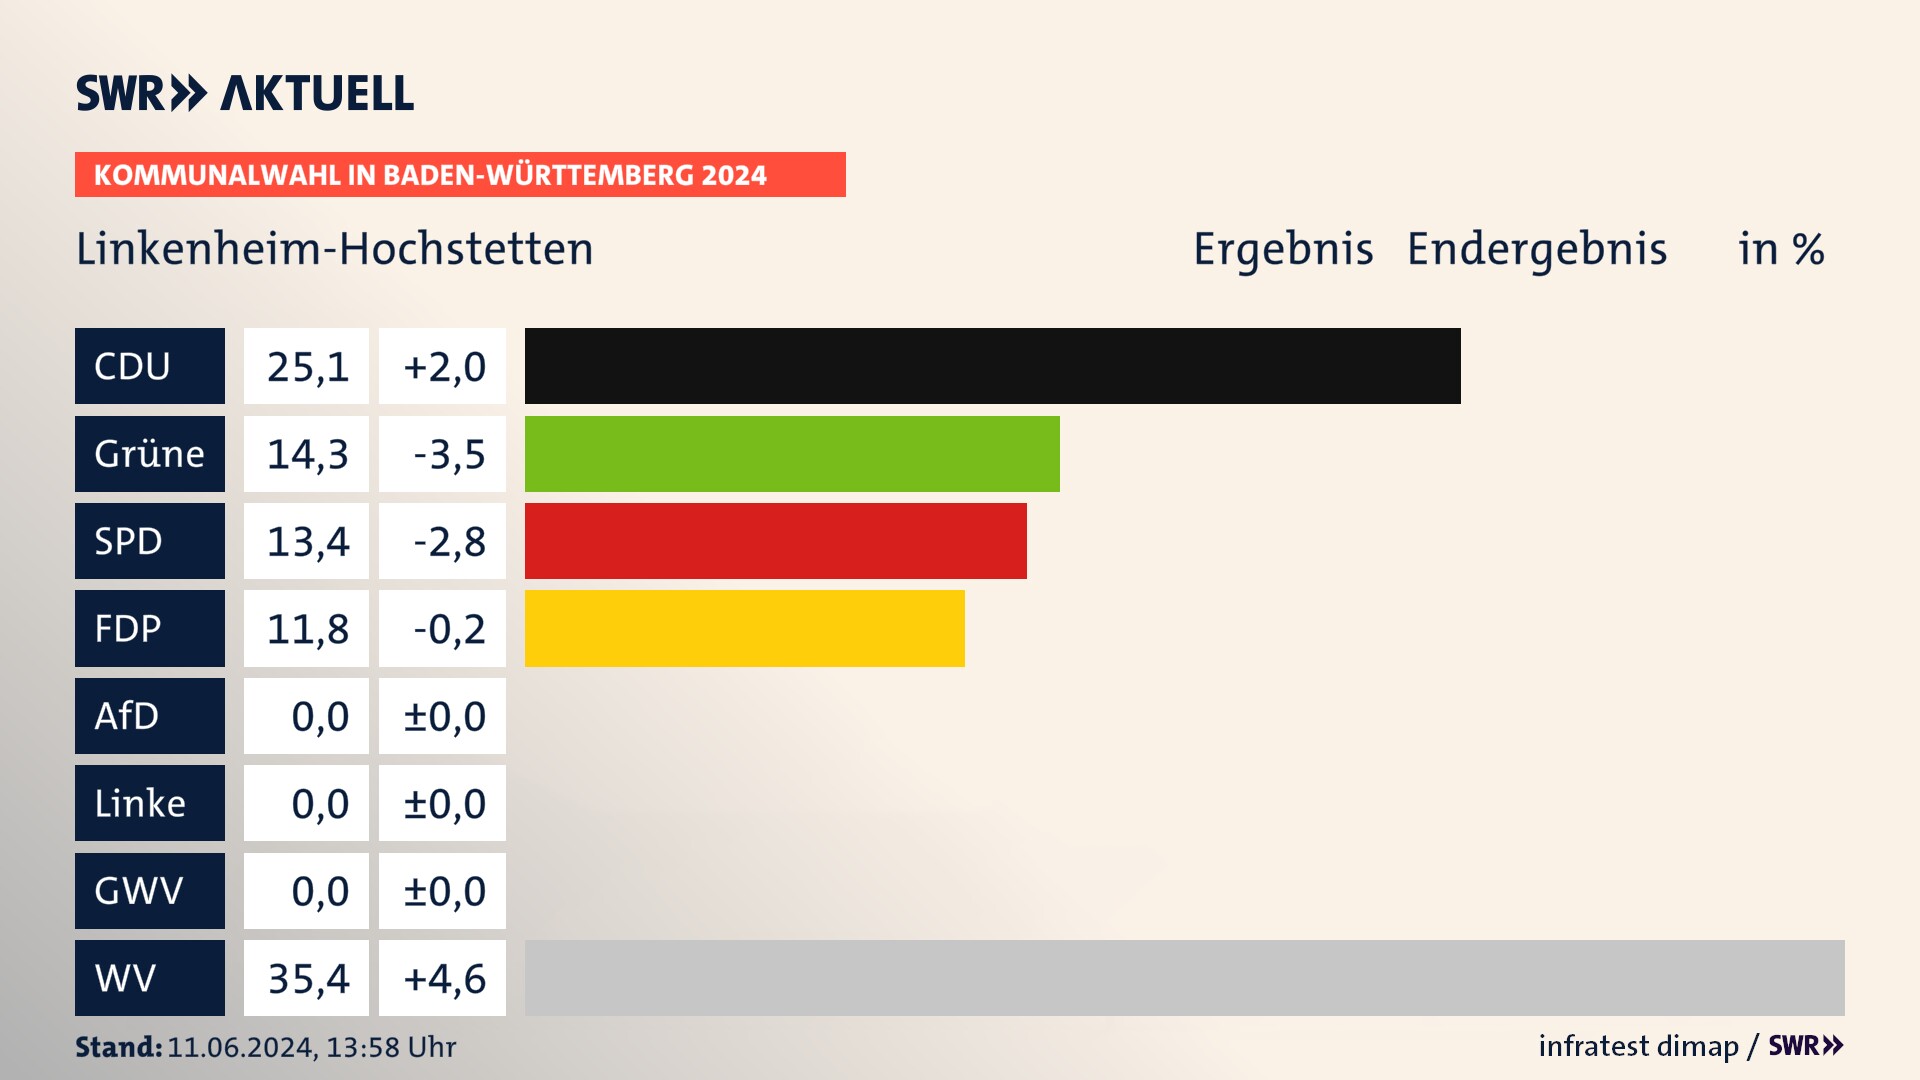 Kommunalwahl 2024 Endergebnis Zweitstimme für Linkenheim-Hochstetten. In Linkenheim-Hochstetten erzielt die CDU 25,1 Prozent der gültigen  Stimmen. Die Grünen landen bei 14,3 Prozent. Die SPD erreicht 13,4 Prozent. Die FDP kommt auf 11,8 Prozent. Die Wählervereinigungen landen bei 35,4 Prozent.